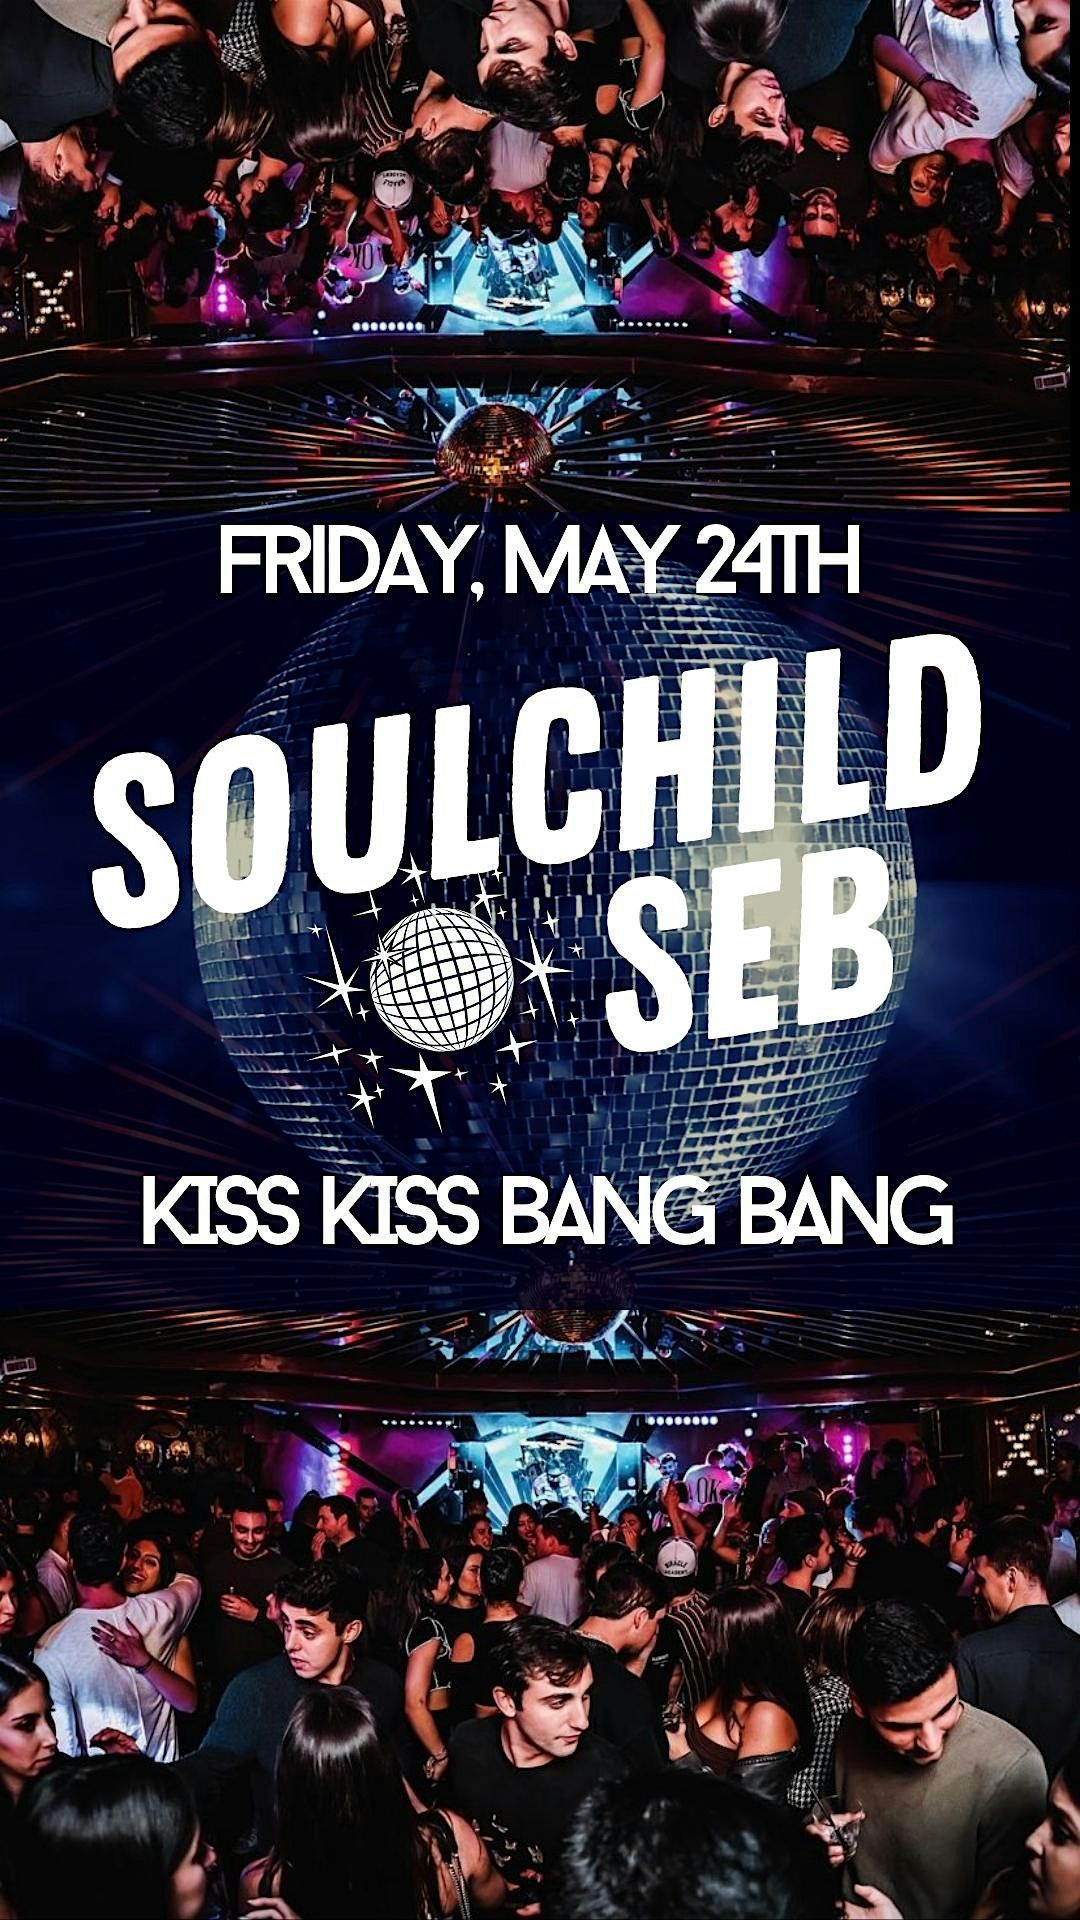 Soulchild Seb at KISS KISS BANG BANG